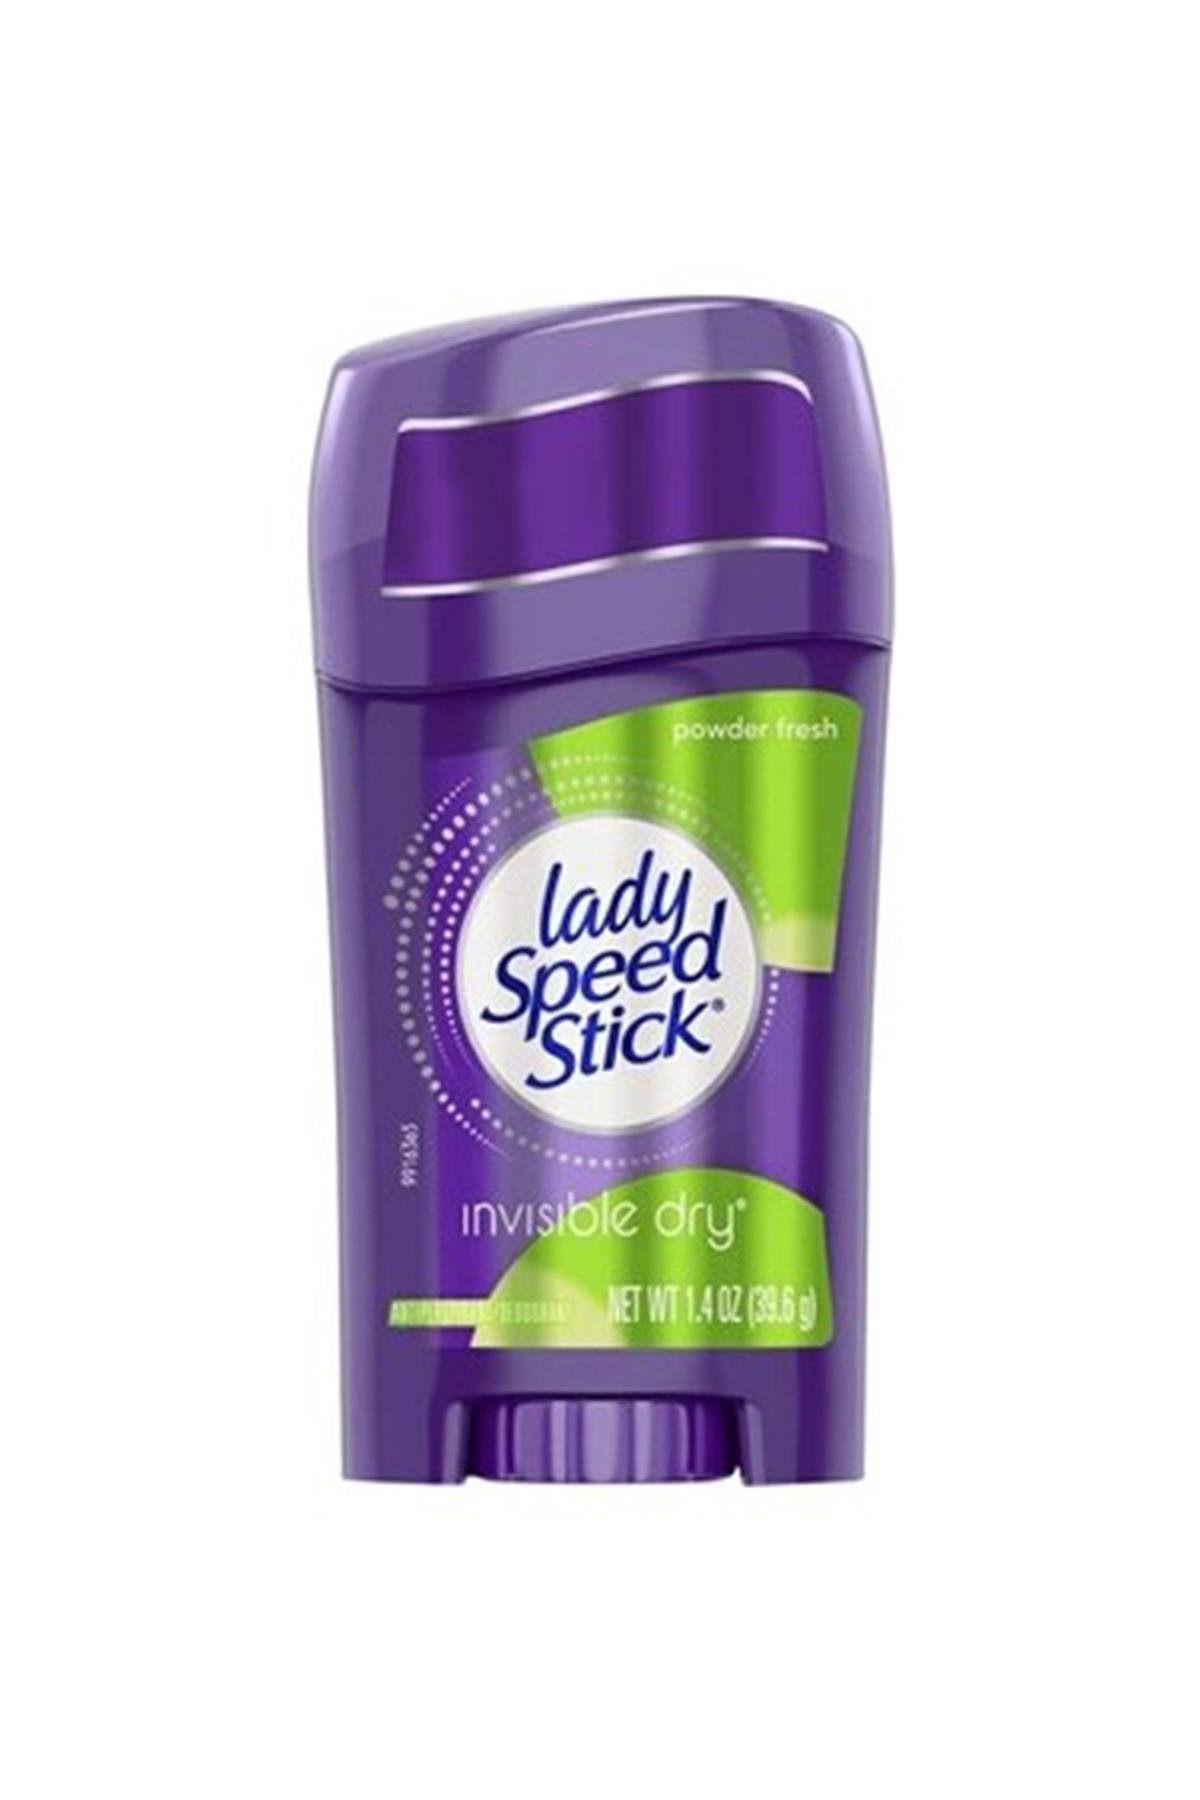 lady-speed-stick-kadin-stick-deodorant-powder-fresh-40-ml-5281-1.jpg